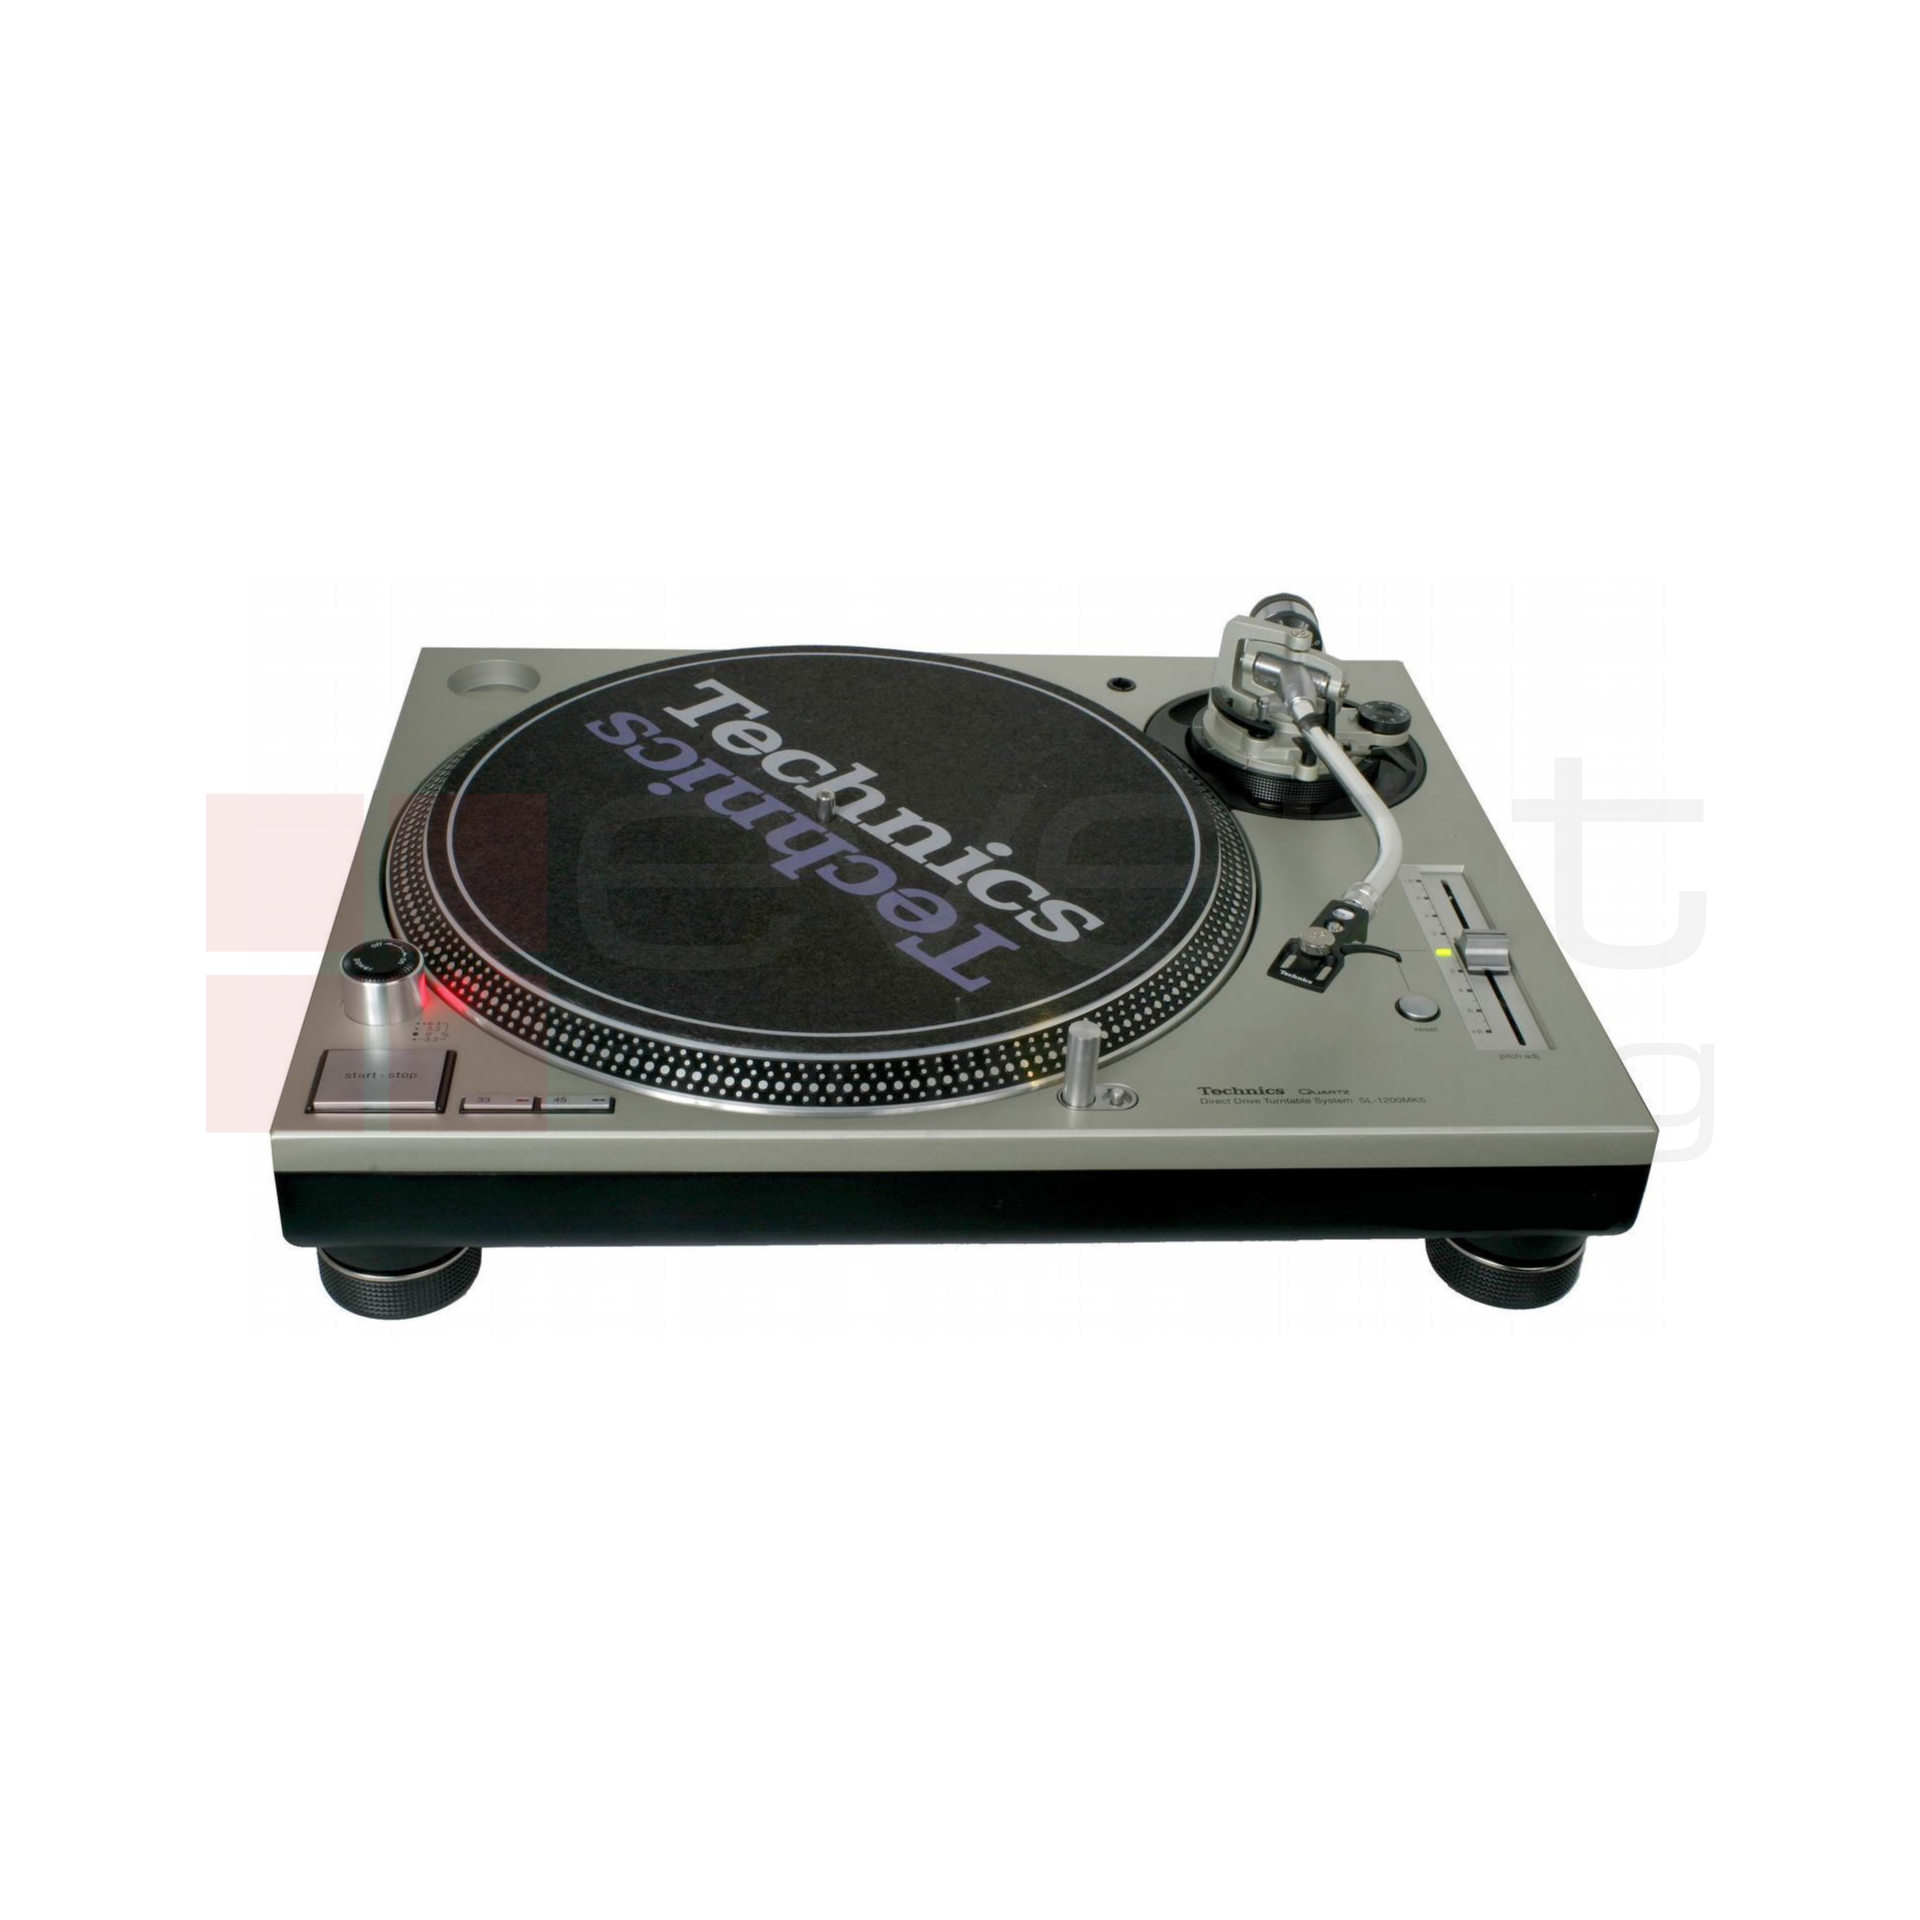 Technics SL-1200MK2 DJ Turntable